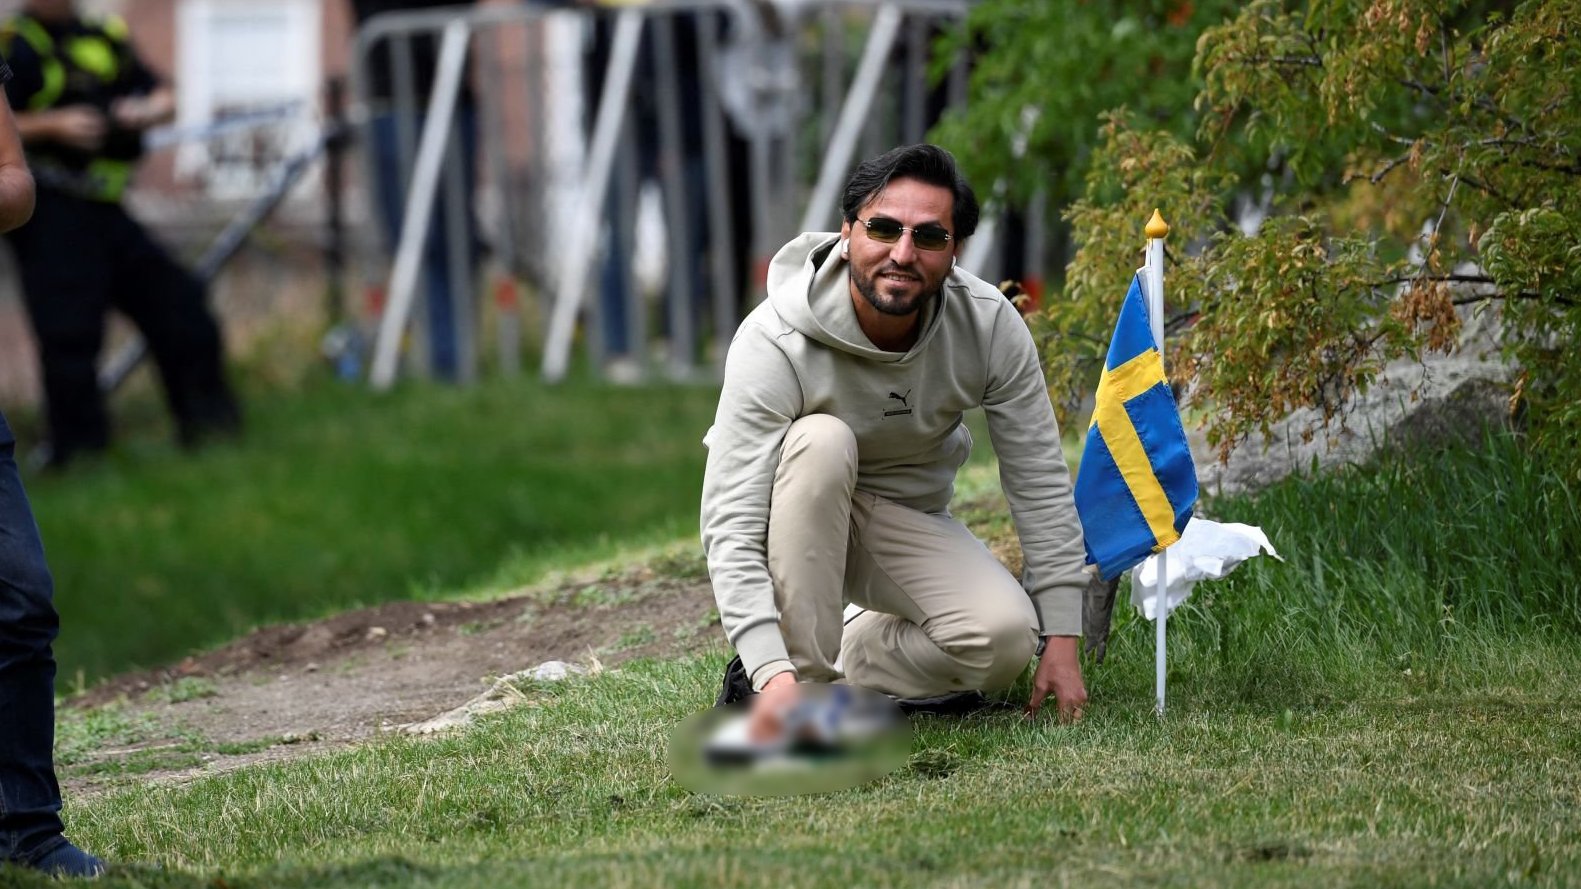 Yüce Kur’an’a yönelik çirkin saldırıdan sonra Irak’tan İsveç’e sert yaptırımlar!